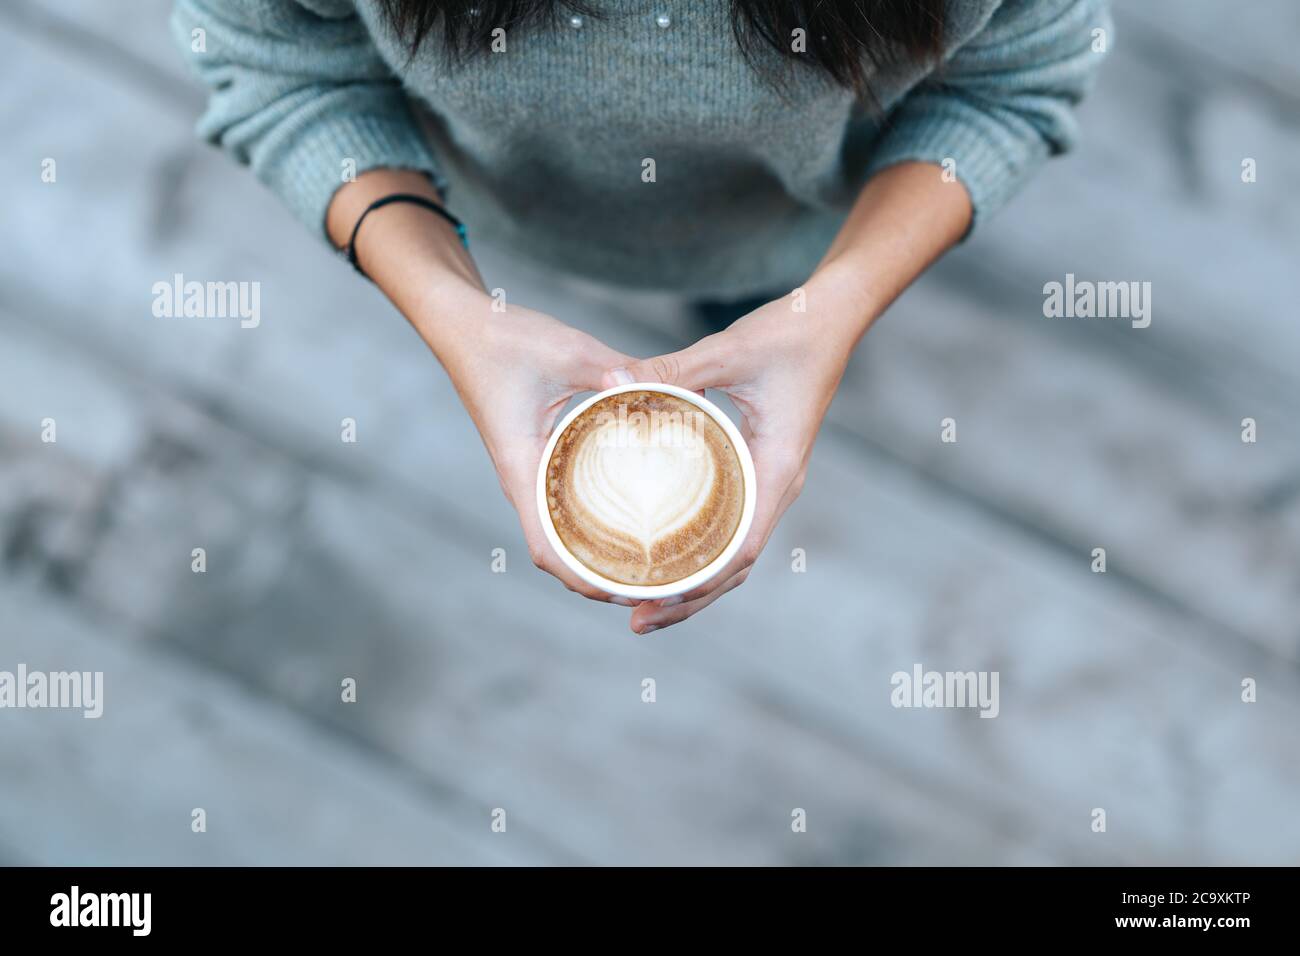 Jeune femme tenant une tasse jetable avec un café en forme de cœur dans un café. Photo de haute qualité Banque D'Images